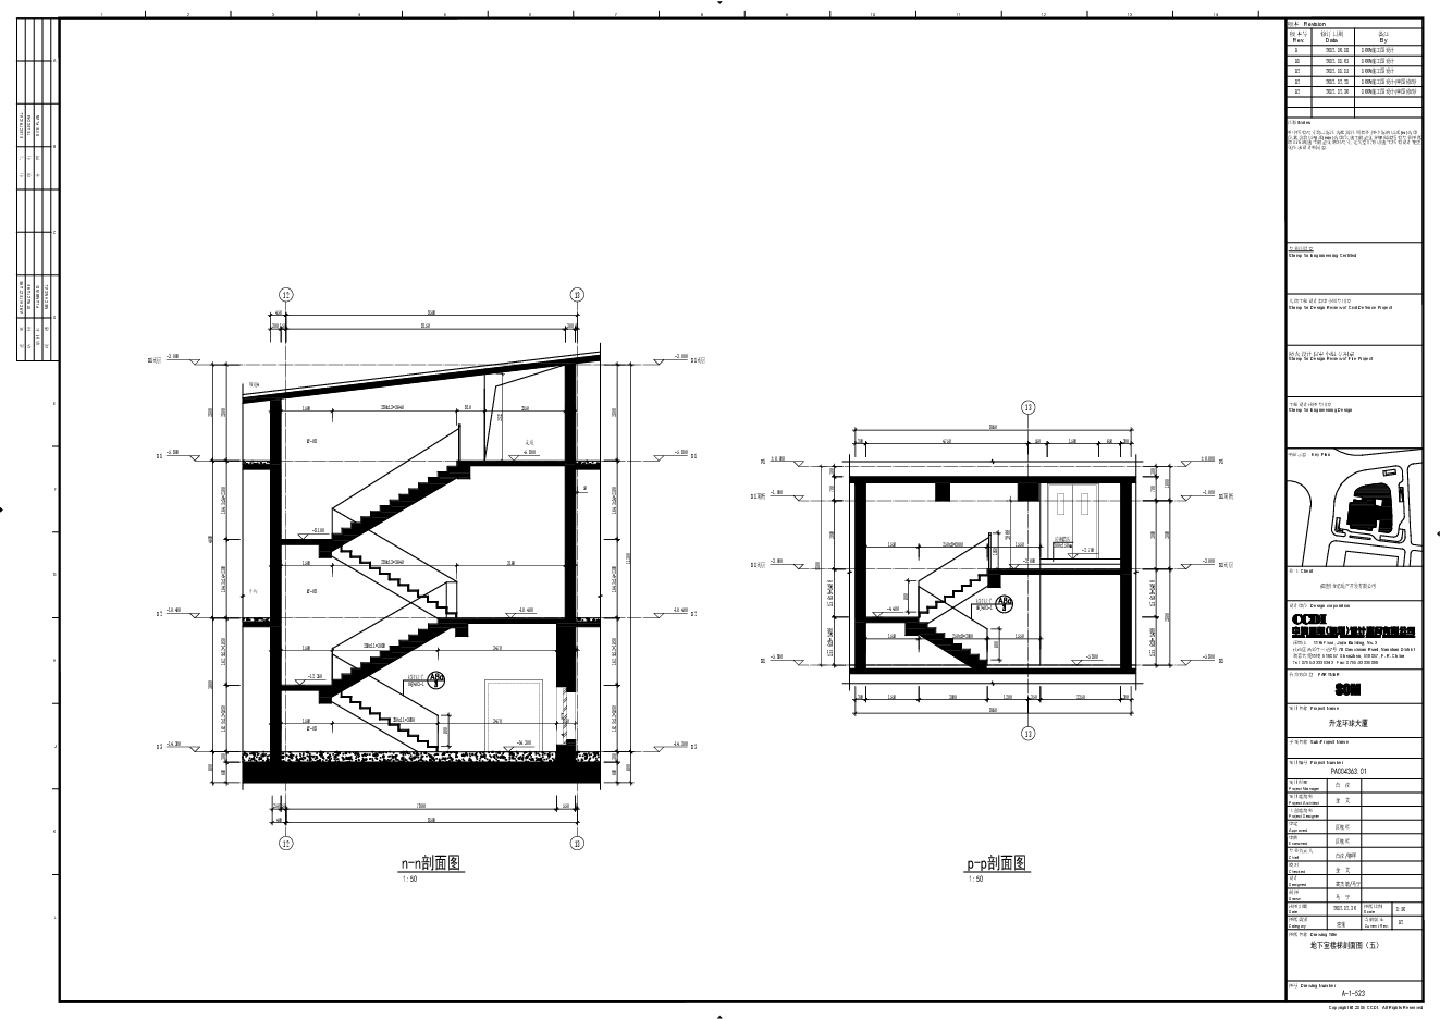 升龙环球大厦-建施A-1-523-地下室楼梯剖面CAD图